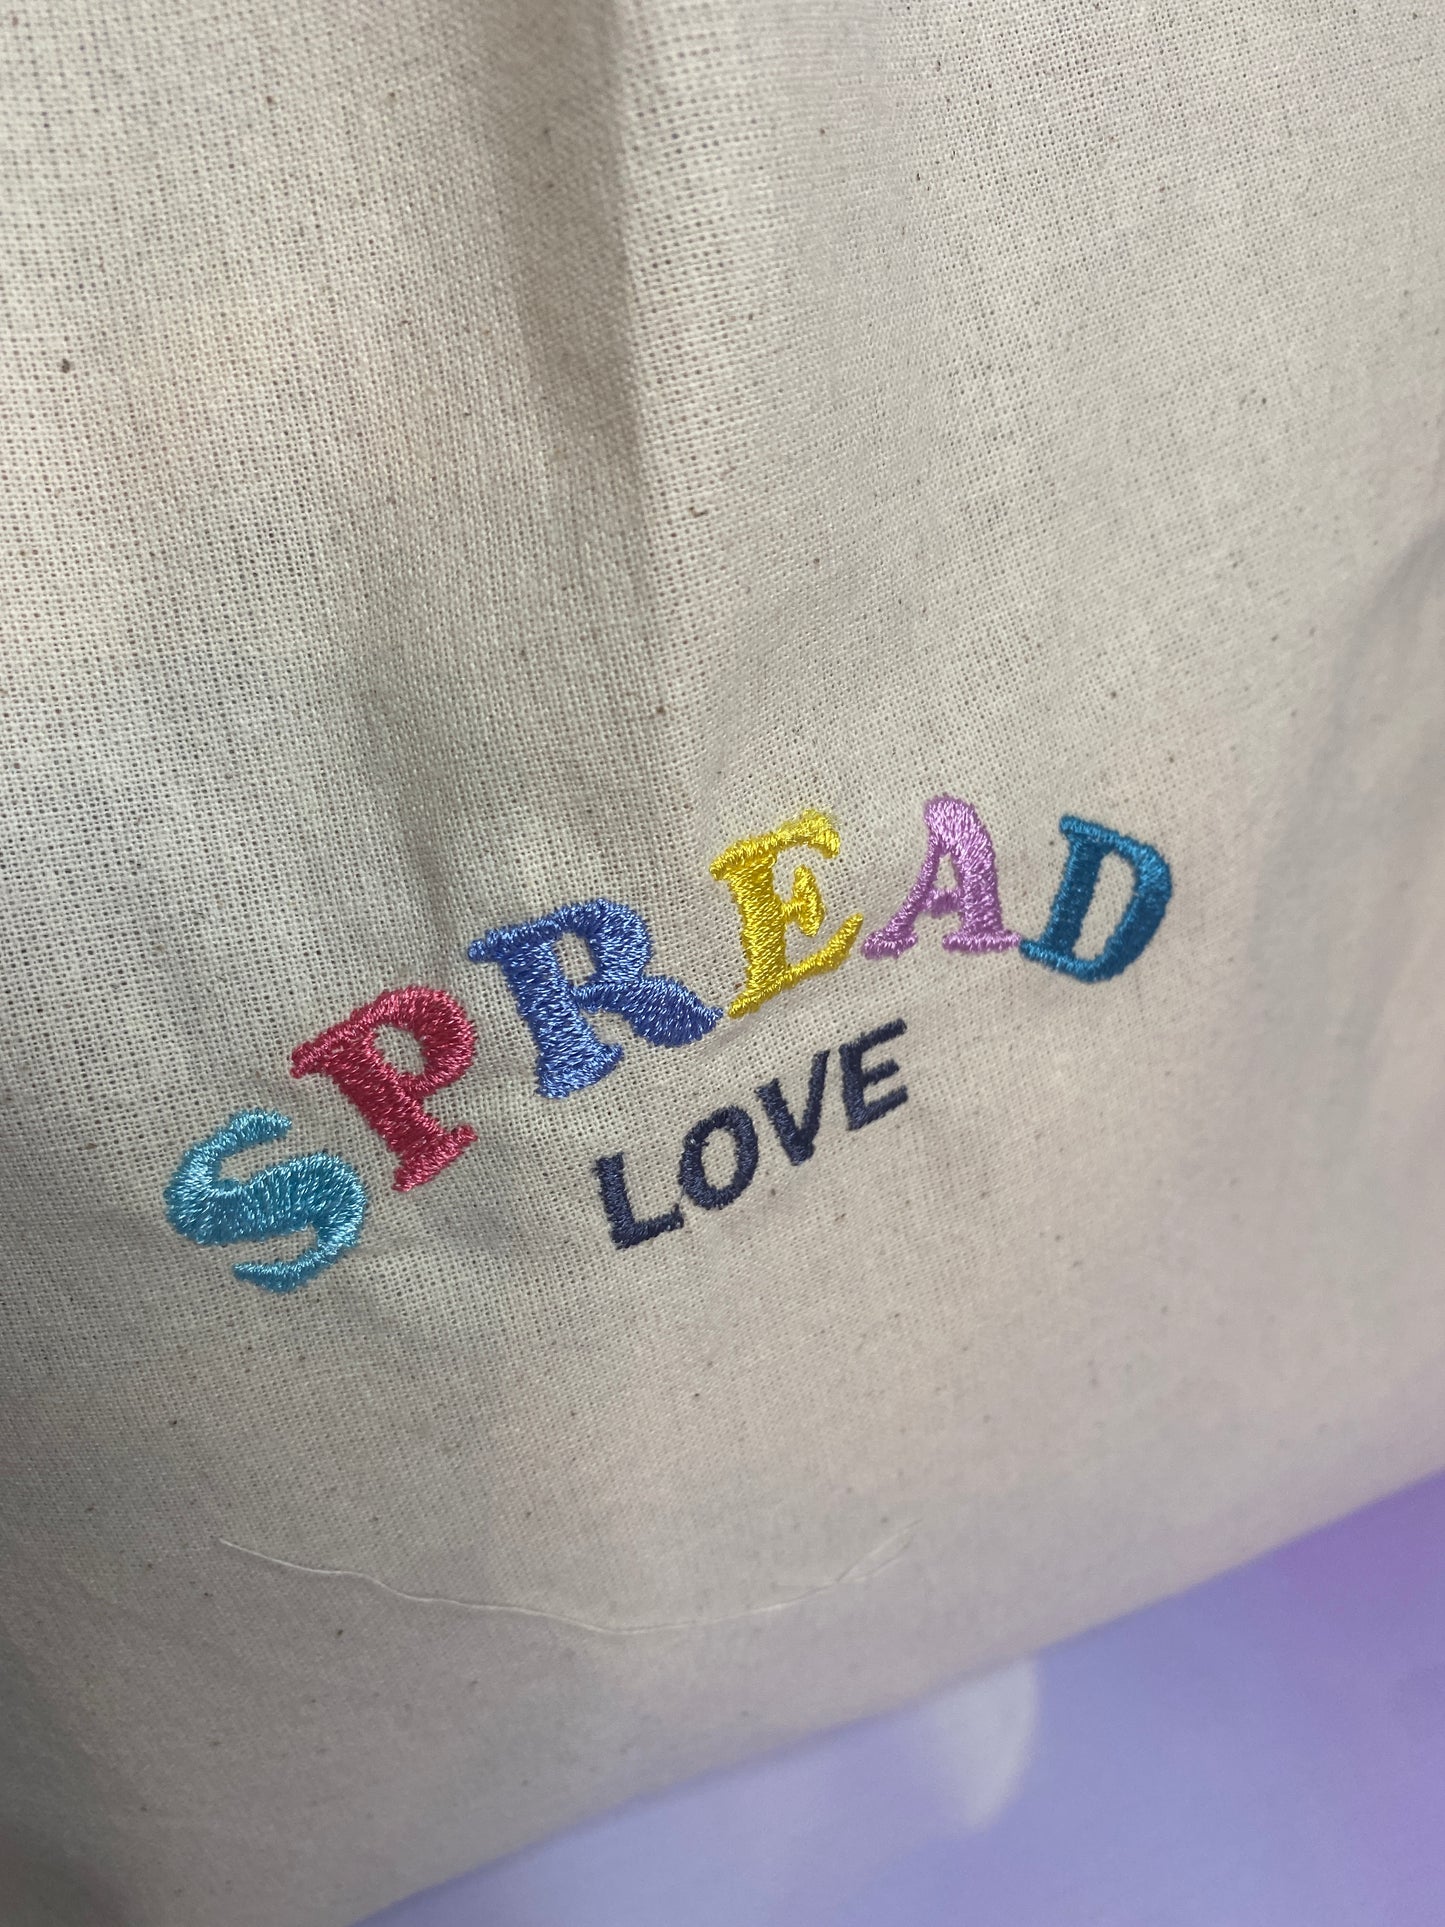 Spread Love Tote Bag